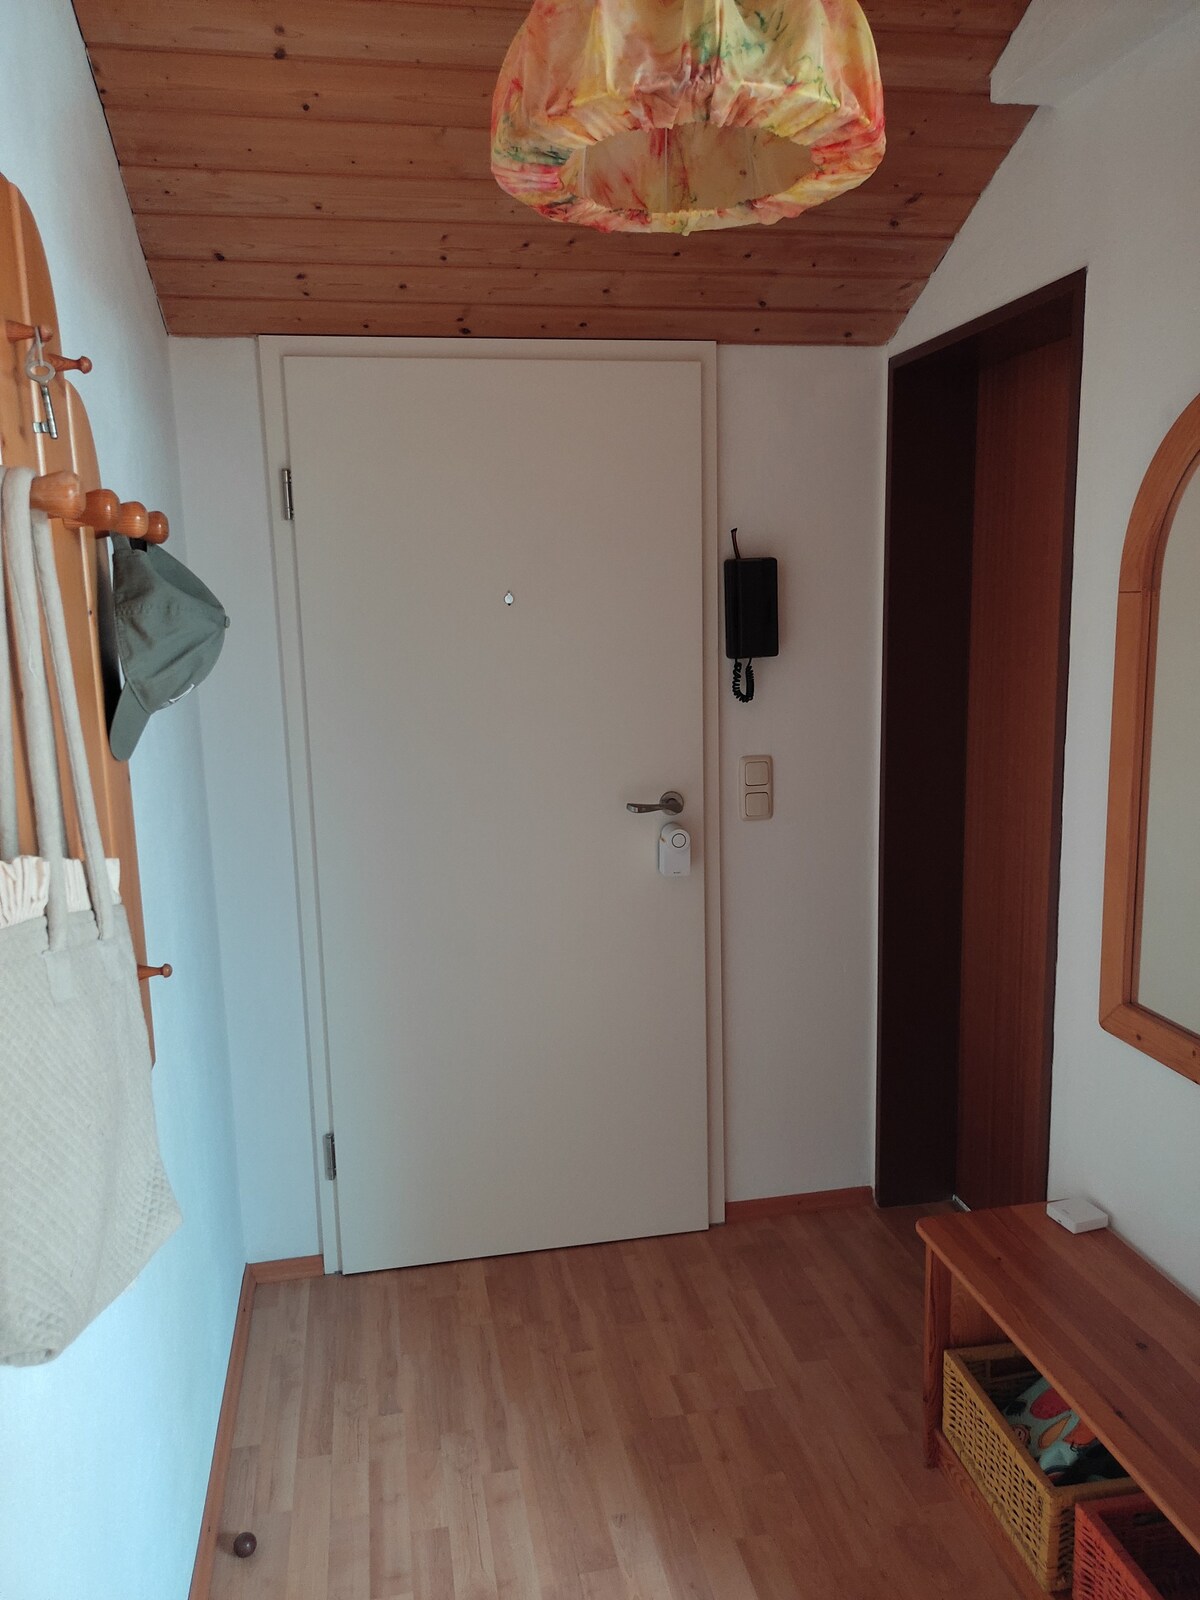 2,5 Zimmer Wohnung bei München, ideal für Messe